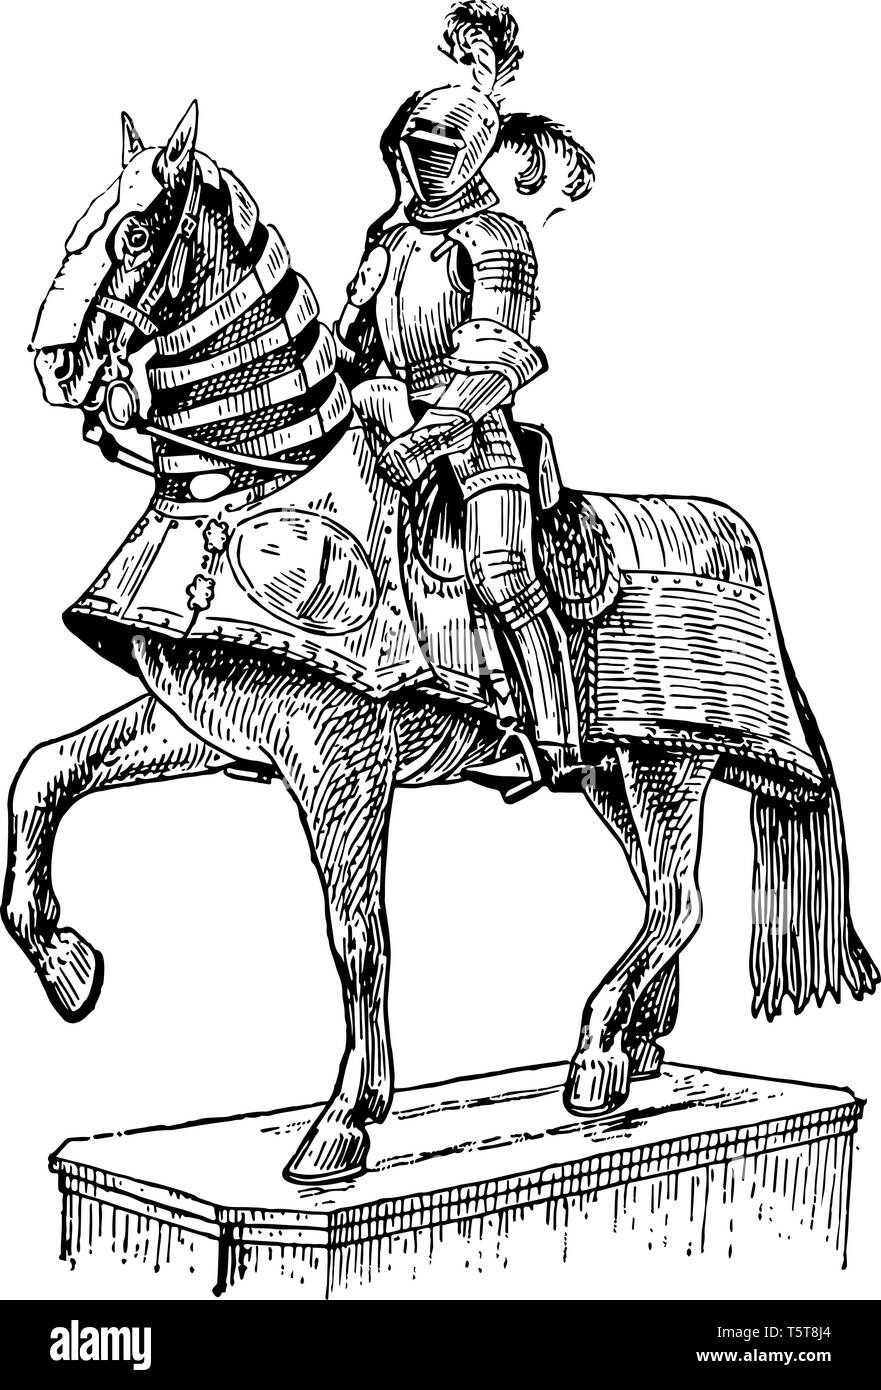 Lo spagnolo armatura indossata dagli spagnoli nella loro conquista del Nuovo Mondo, vintage disegno della linea di incisione o illustrazione. Illustrazione Vettoriale